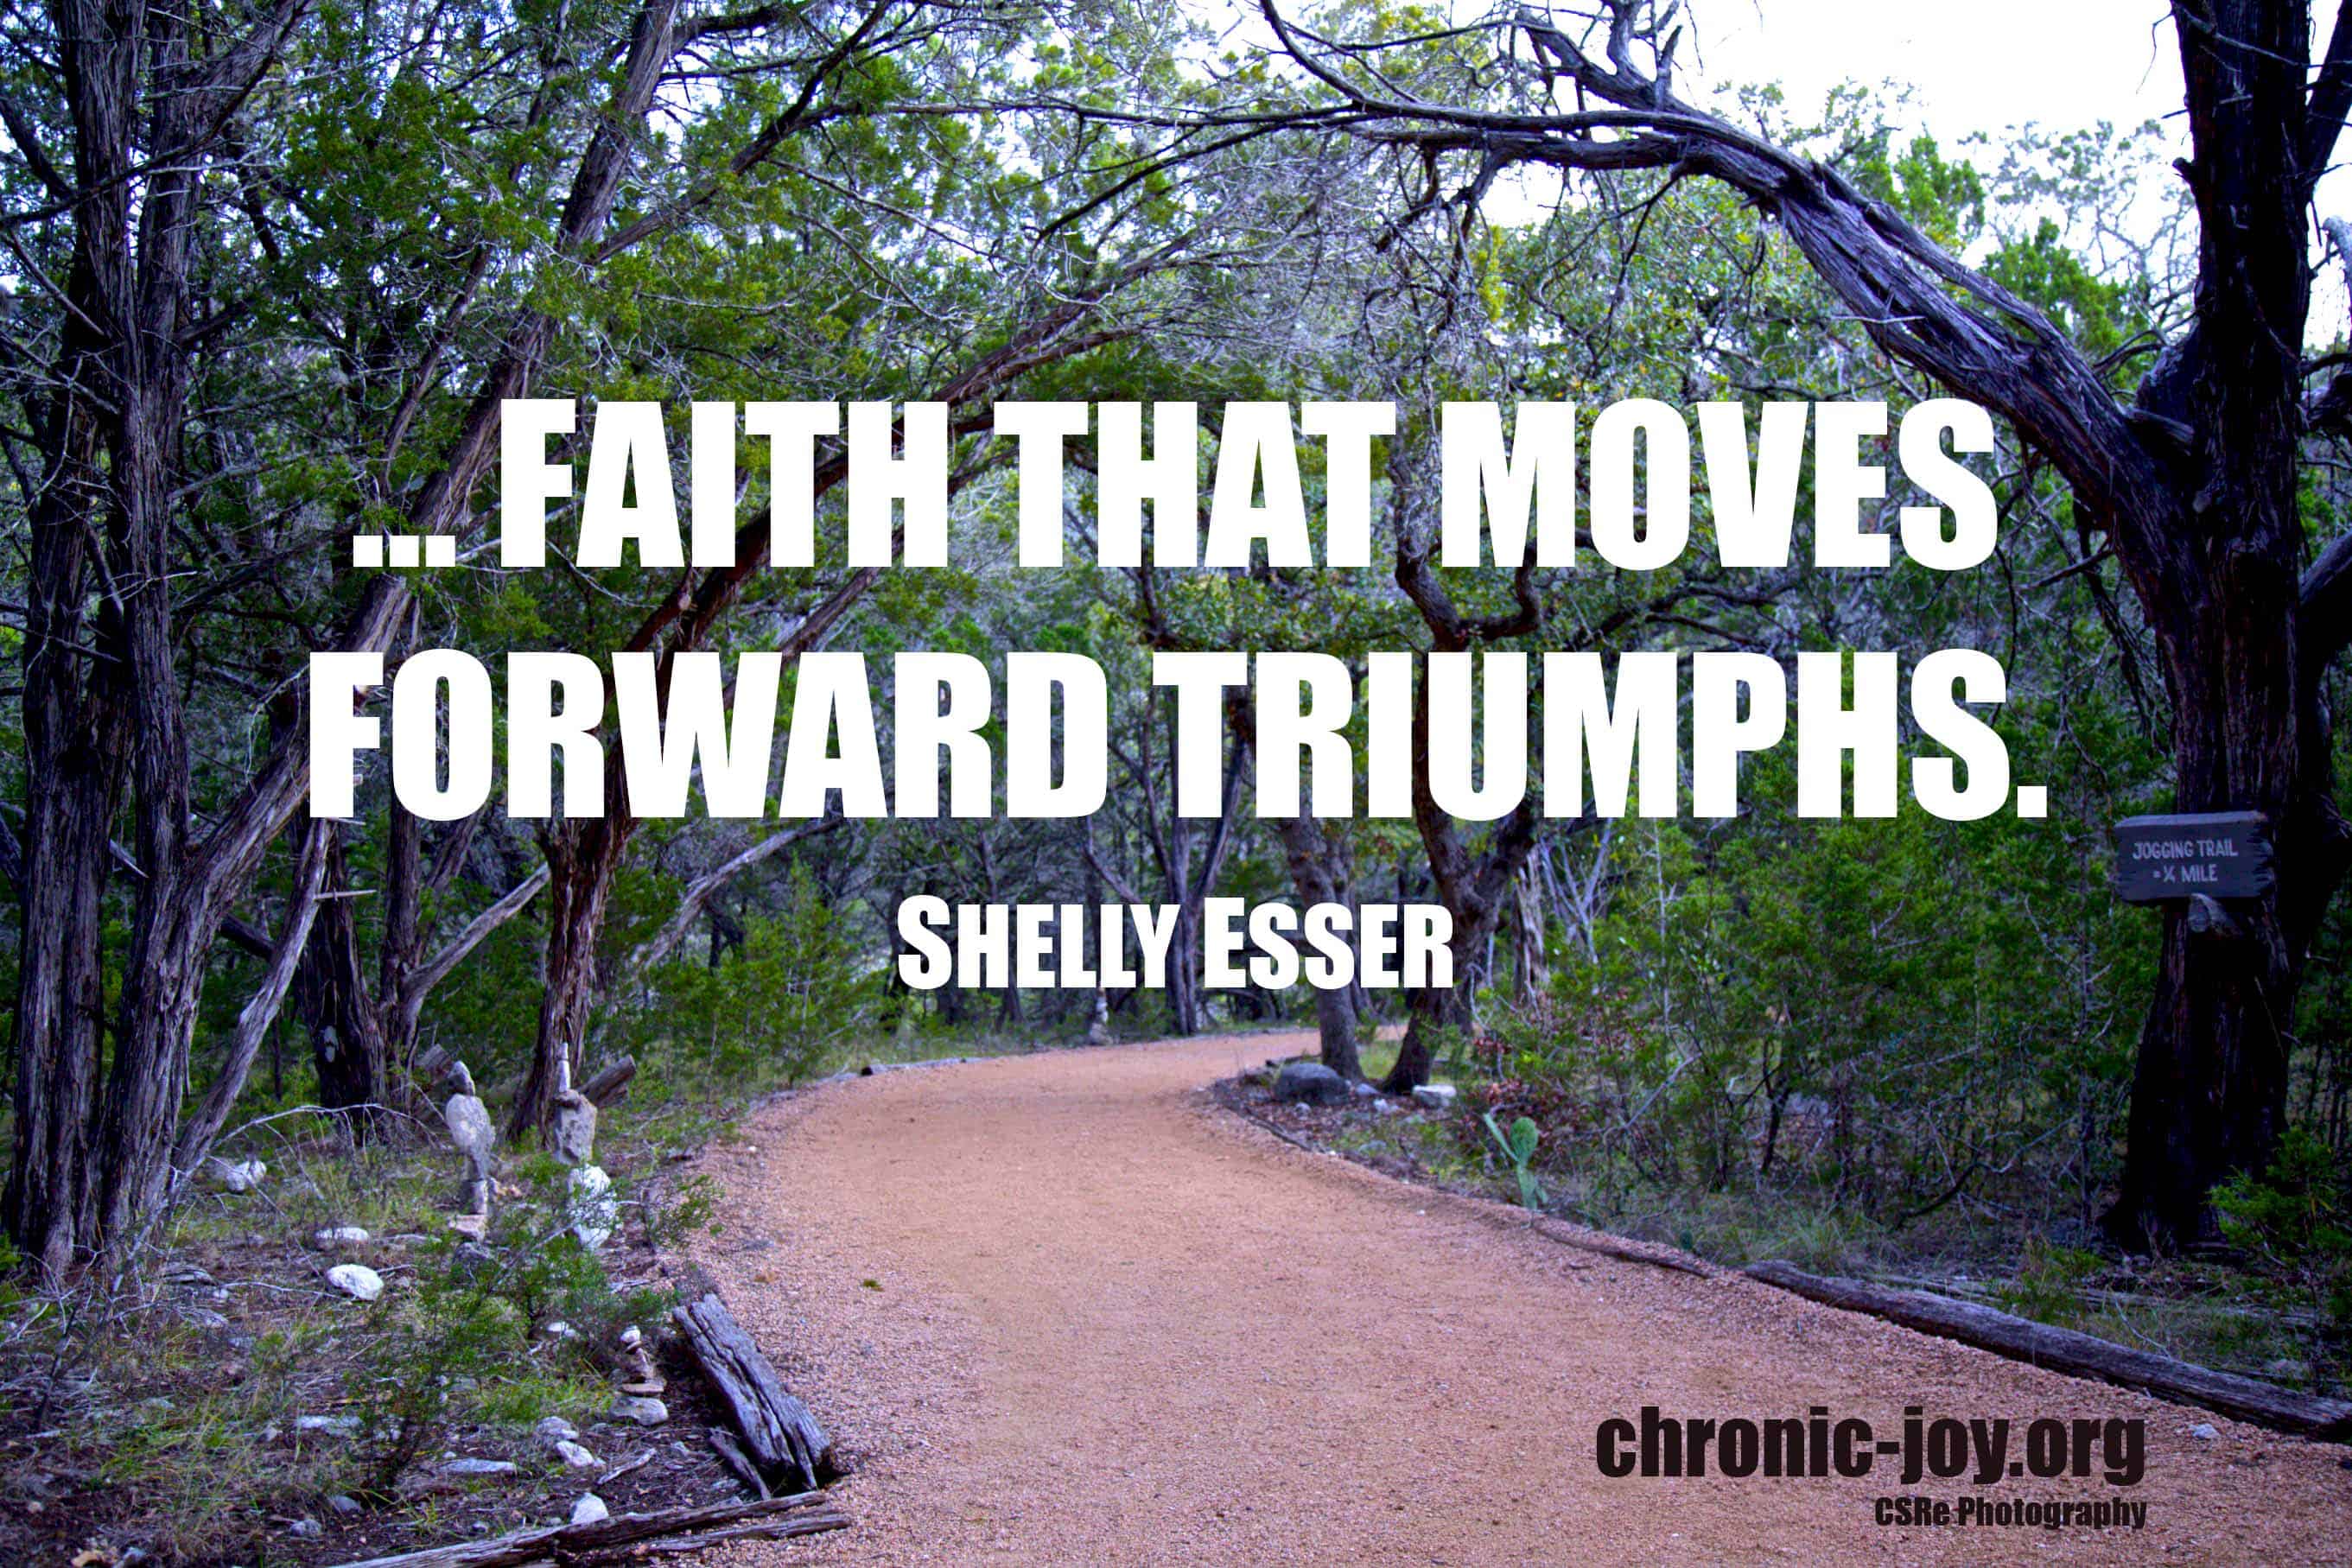 "...faith that moves forward triumphs." Shelly Esser